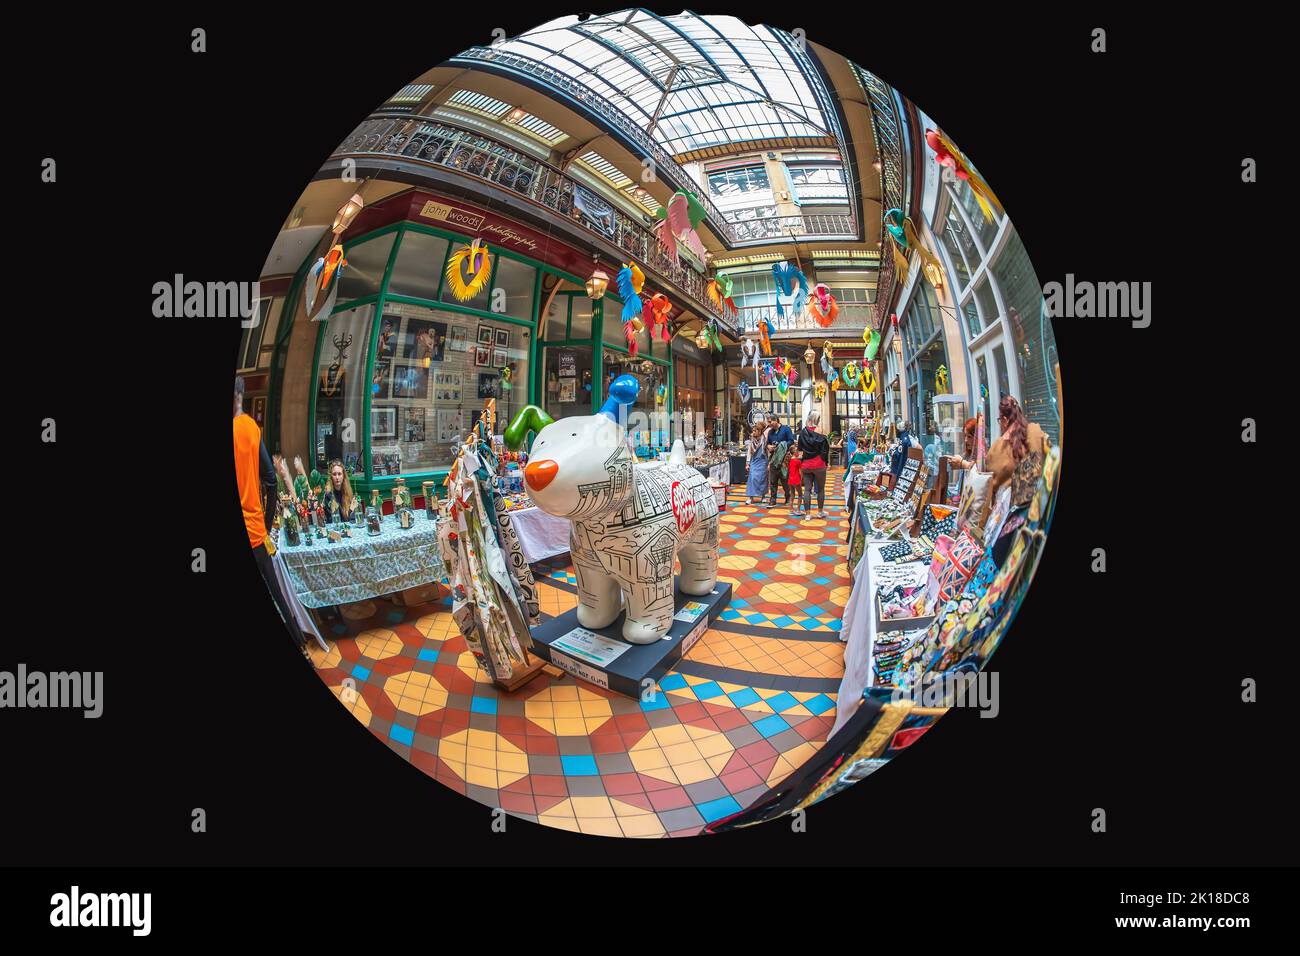 La splendida Victorian Byram Arcade è un centro commerciale e finanziario nel cuore di Huddersfield, con eventi di scultura Snow Dog. Prospettiva occhio di pesce. Foto Stock